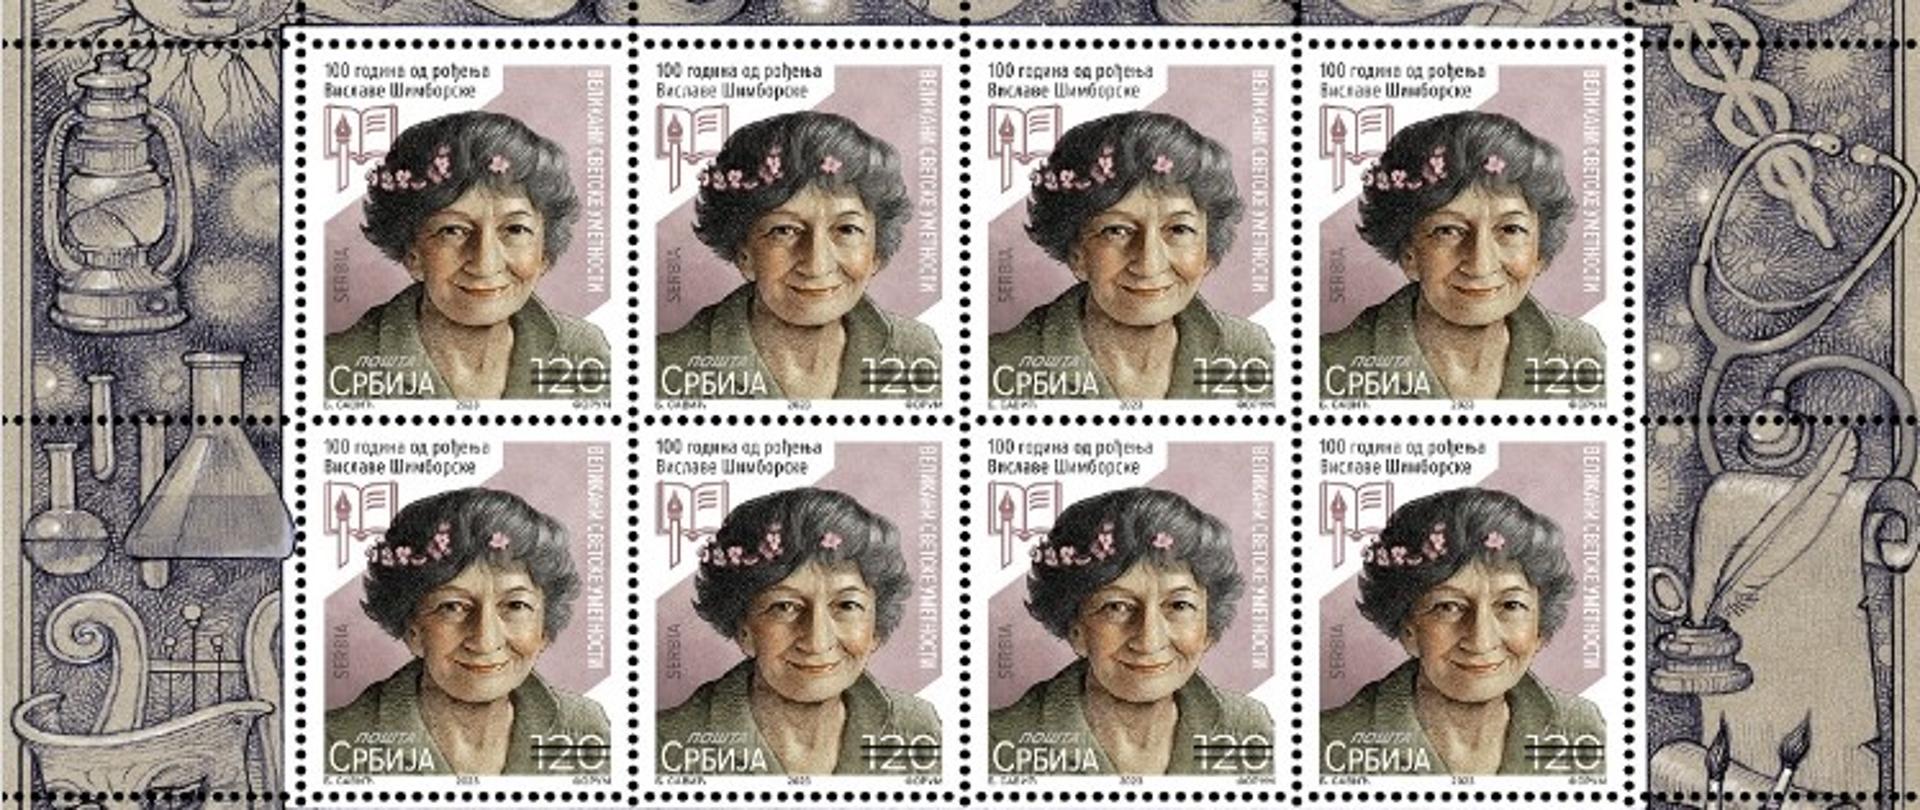 Z inicjatywy placówki, z okazji przypadającej w 2023 roku 100. rocznicy urodzin Wisławy Szymborskiej, Poczta Republiki Serbii wprowadziła do obiegu znaczek upamiętniający polską noblistkę